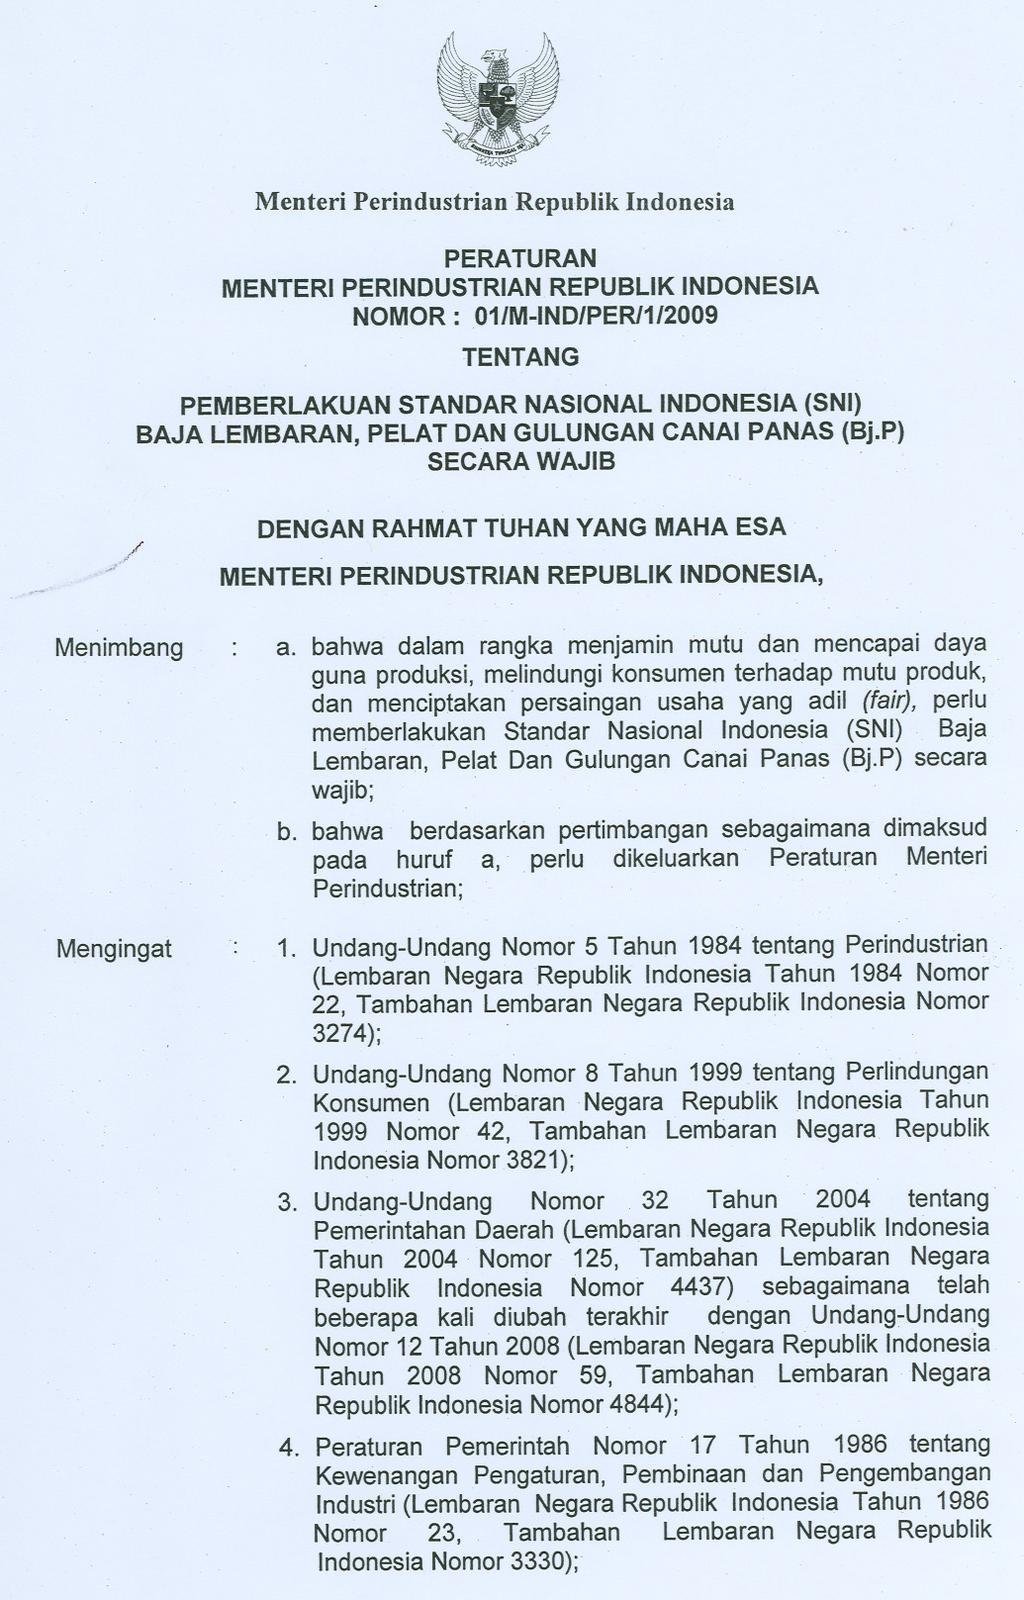 "I /,P Menimbang Mengingat Menteri PerindustrianRepublik Indonesia PERATURAN MENTERI PERINDUSTRIAN REPUBLIK INDONESIA NOMOR: 01/M-IND/PER/1/2009 TENTANG PEMBERLAKUAN STANDAR NASIONAL INDONESIA (SNI)